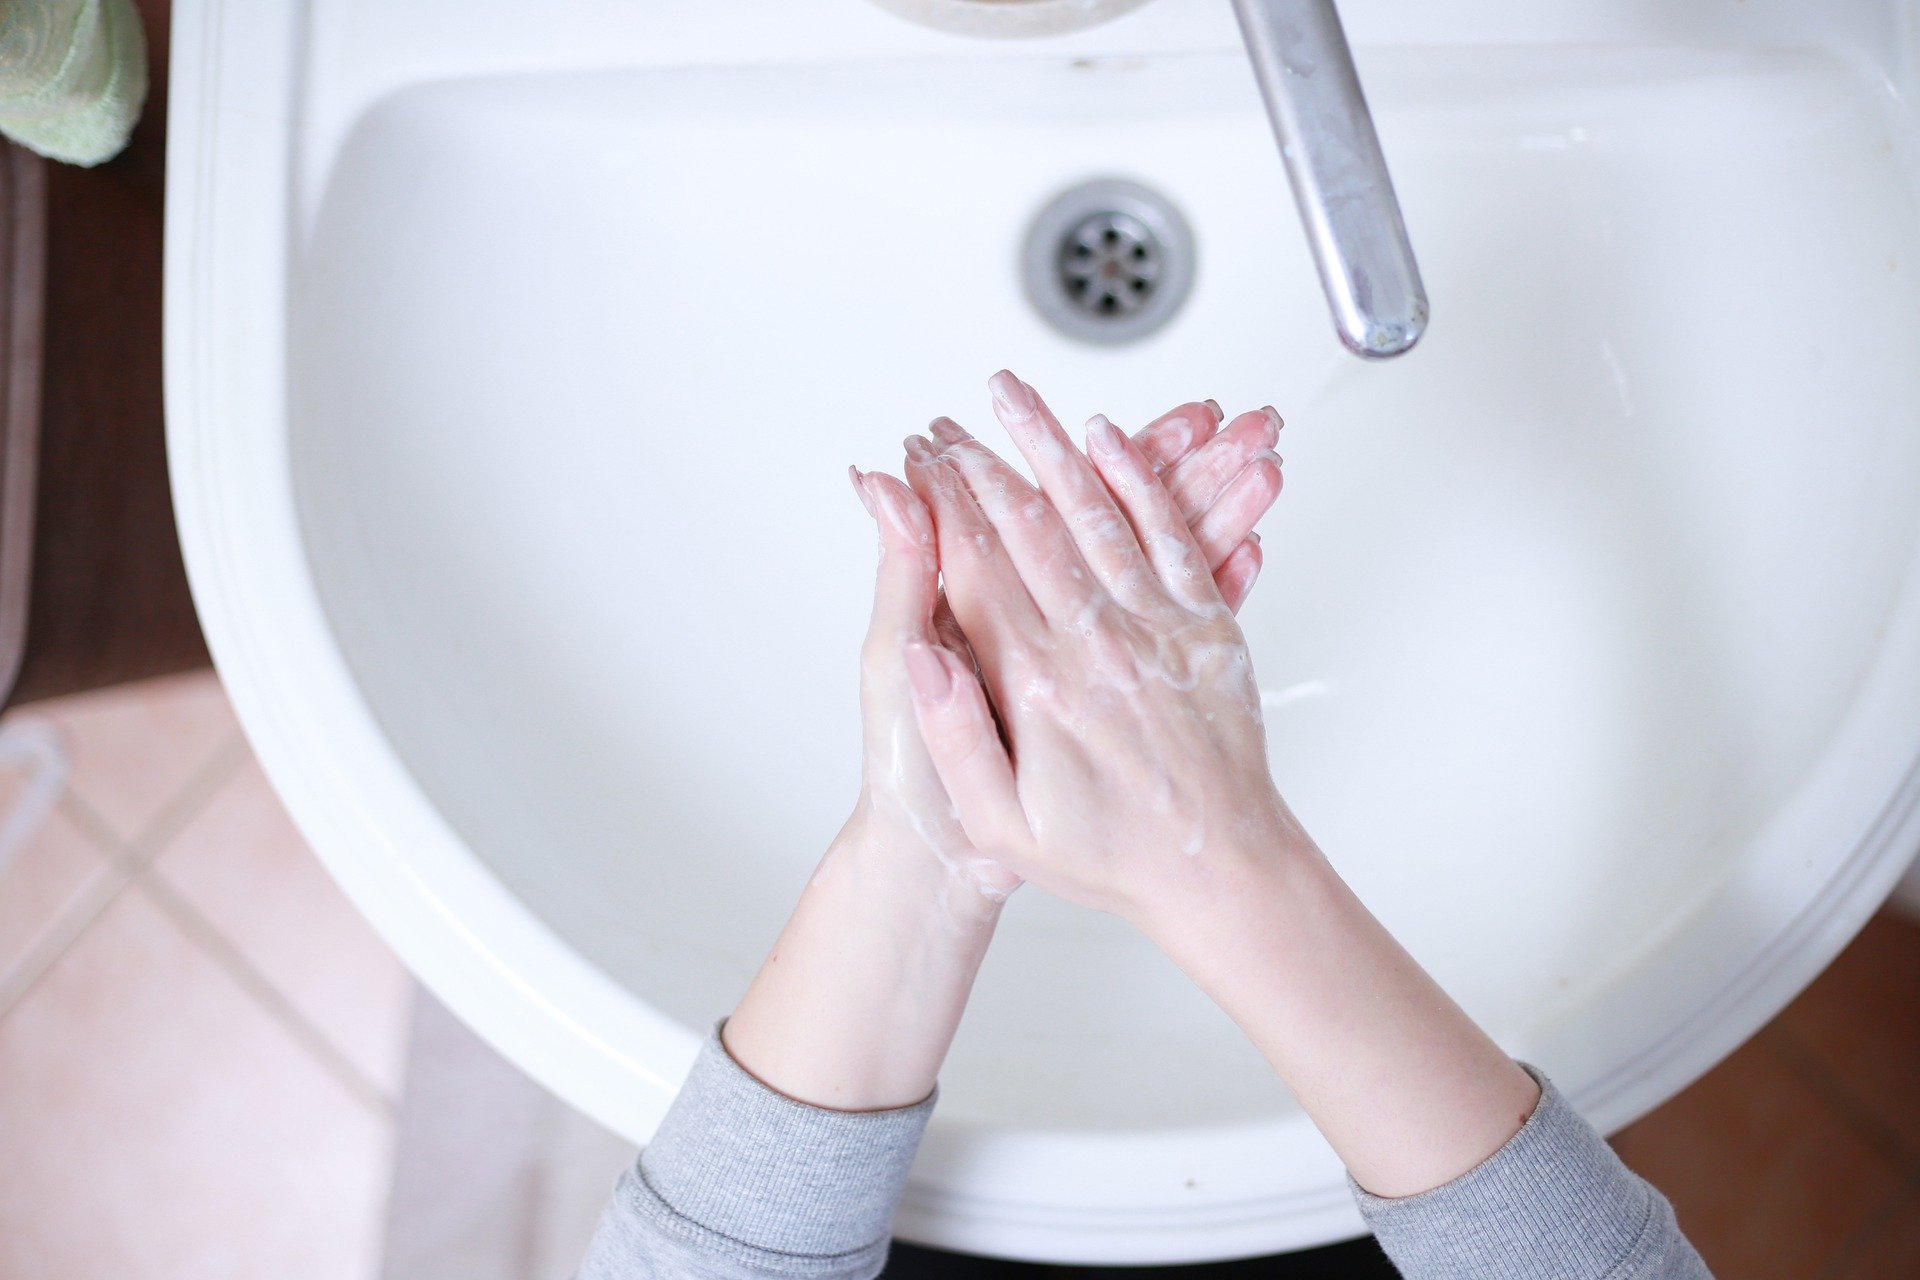 Pred nasadením ústneho rúška použite dezinfekciu na báze alkoholu alebo si umyte ruky mydlom a vodou.

„Pred použitím rúška je dôležité umyť si ruky, pretože môžu byť kontaminované. Pri nasadzovaní by malo byť rúško úplne čisté,“ hovorí Fabiánová. 

Ideálne je dobre si umyť ruky pod tečúcou vodou. Ak nie je voda k dispozícii, hodí sa aj dezinfekcia s alkoholom. „Tá sa po rozotrení nezmýva, necháva sa zaschnúť,“ upozorňuje odborníčka.